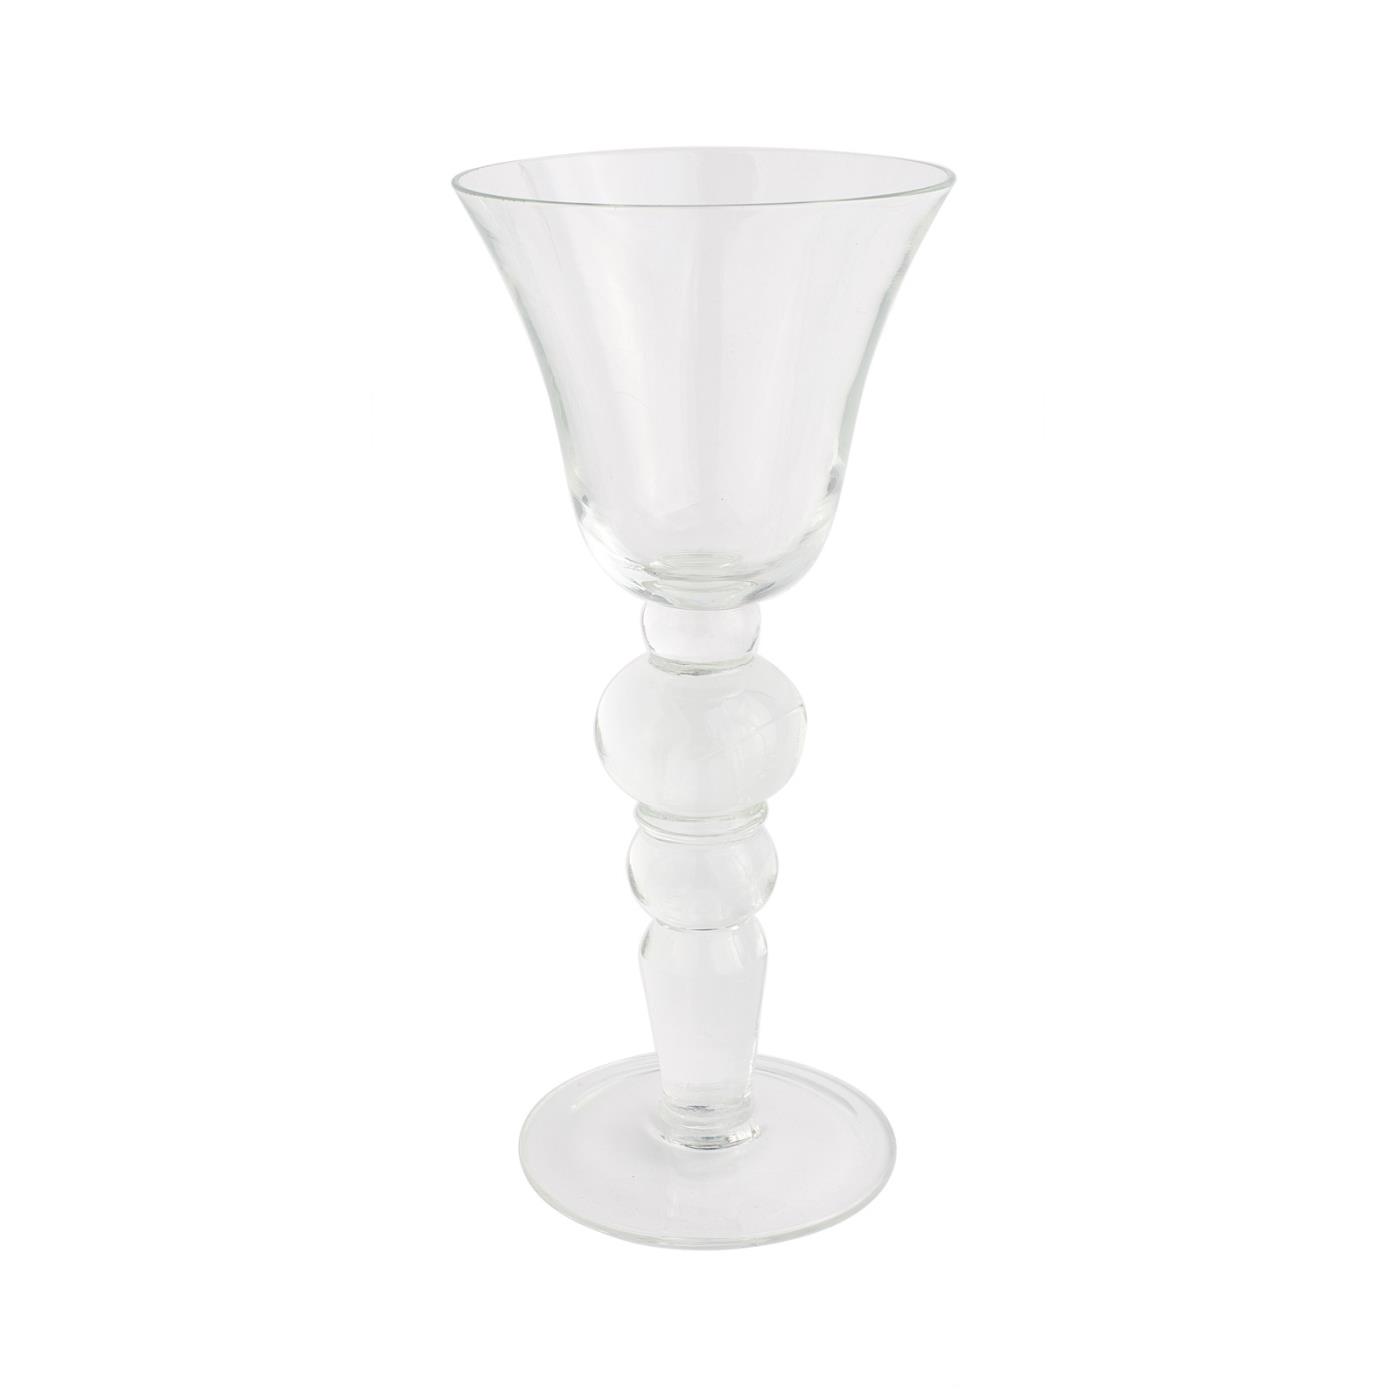 Murano Collection -  White Wine Glass 6 oz